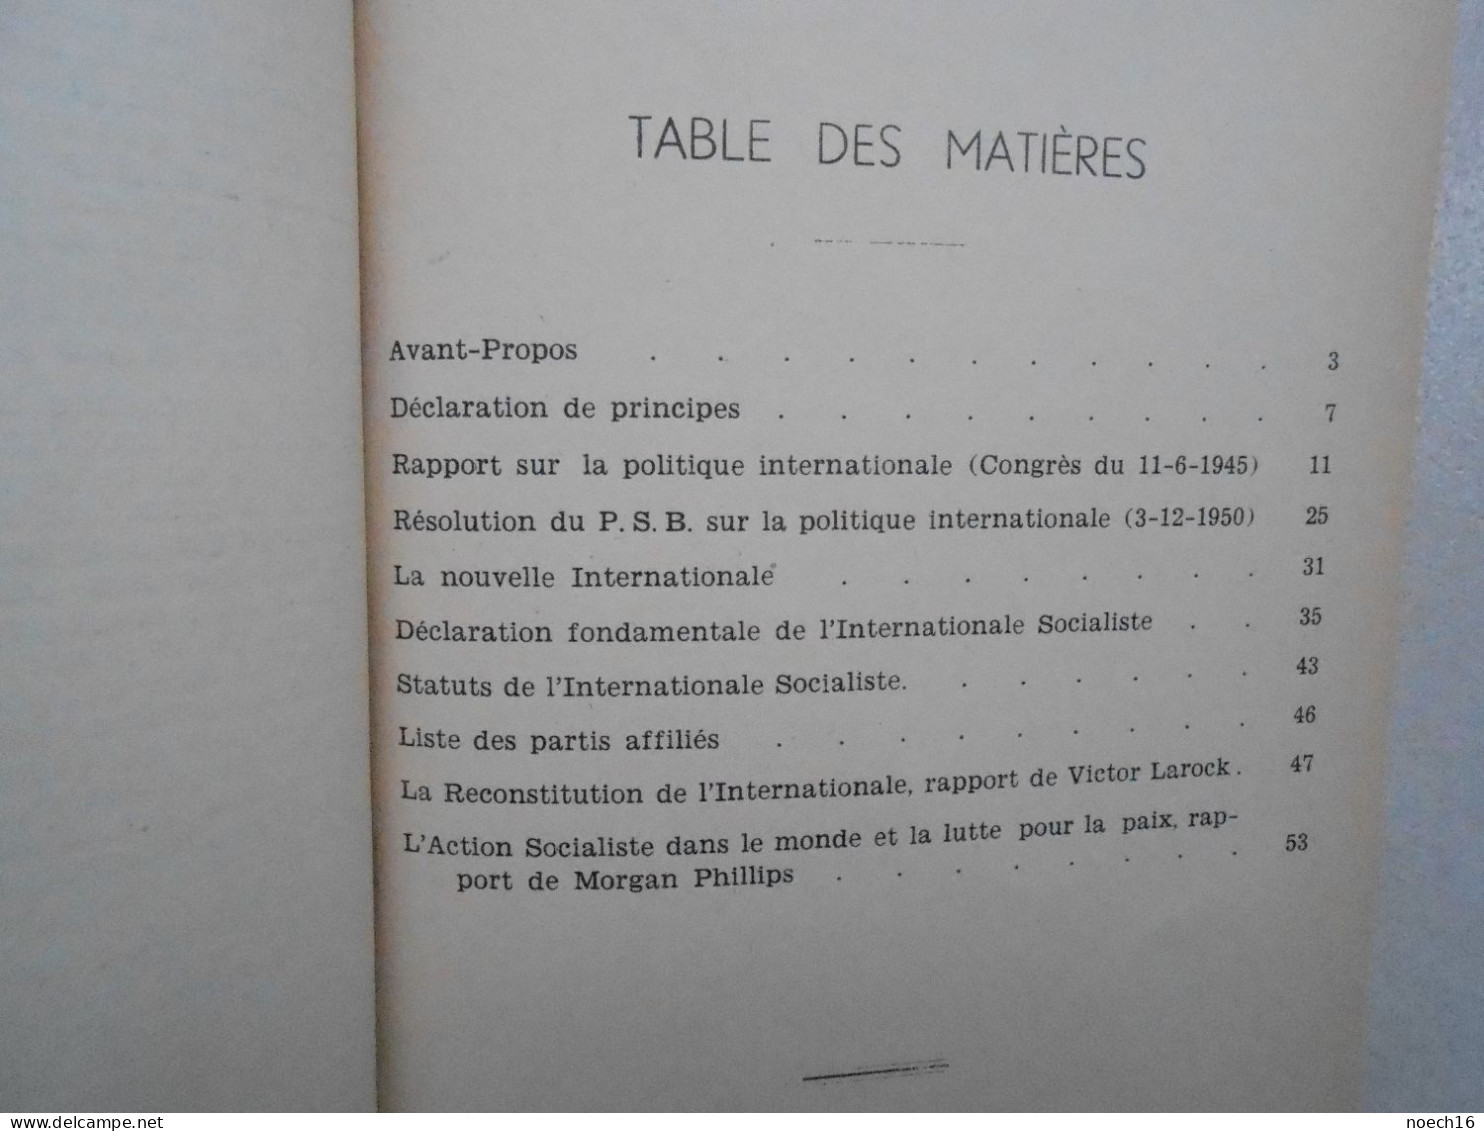 De Quaregnon à La Nouvelle Internationale Socialiste 1951? Editions Du Peuple - Belgien